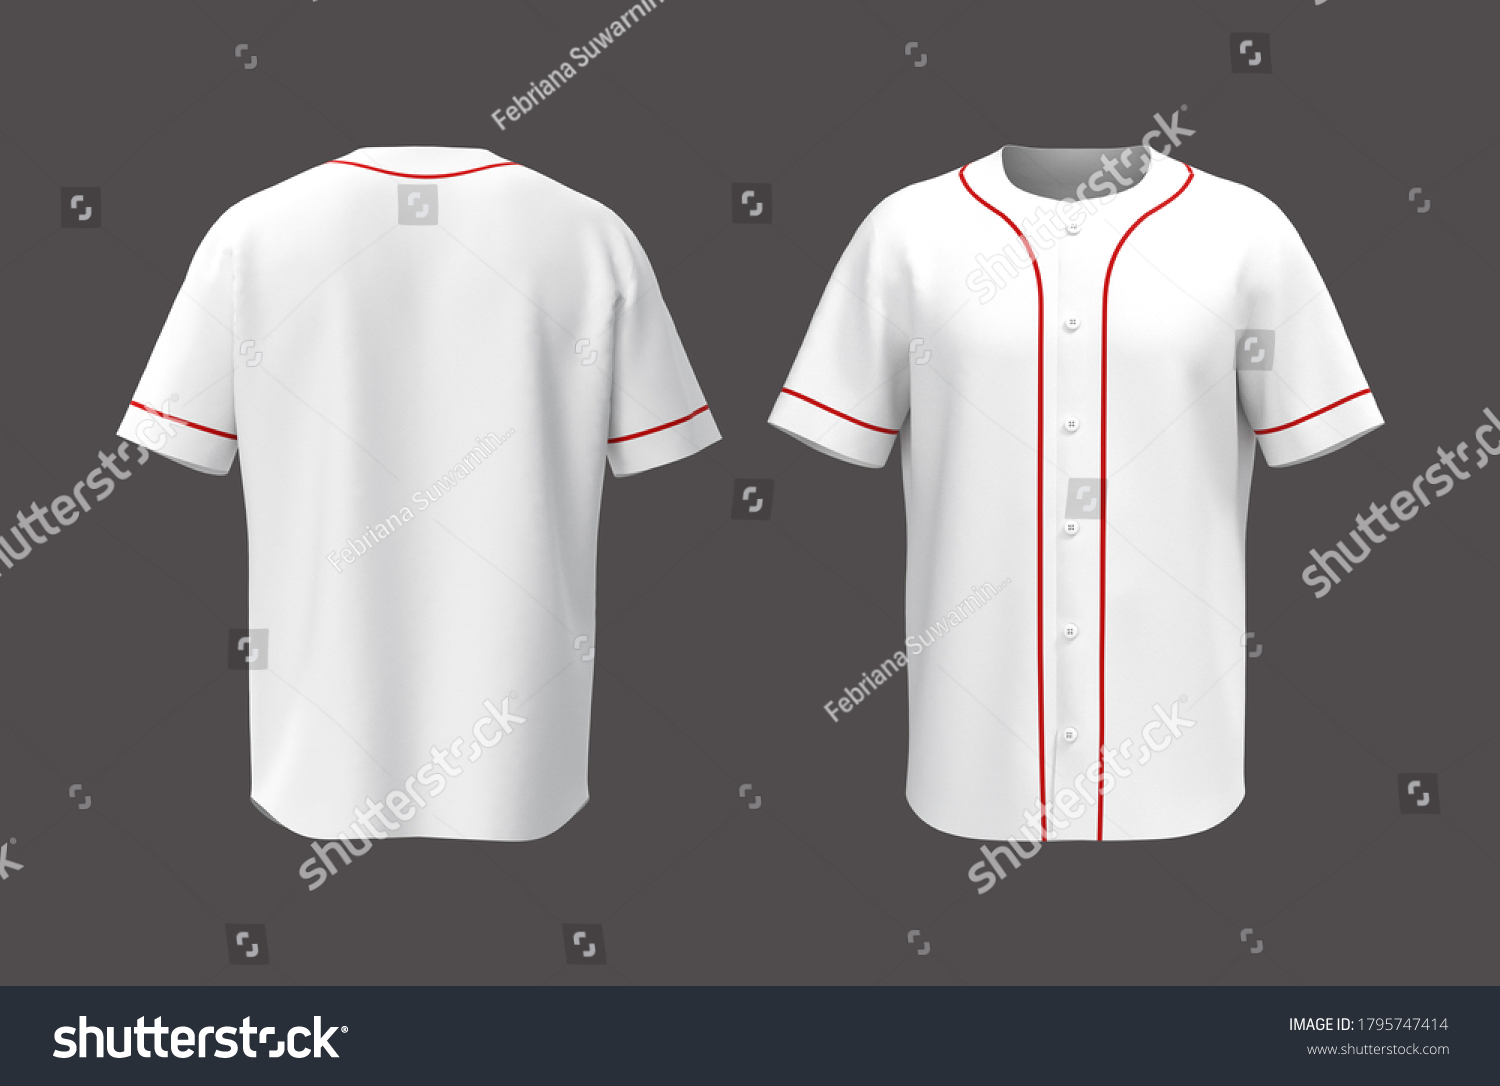 Baseball T Shirt Mockup Isolated On Stock Illustration 1795747414 ...